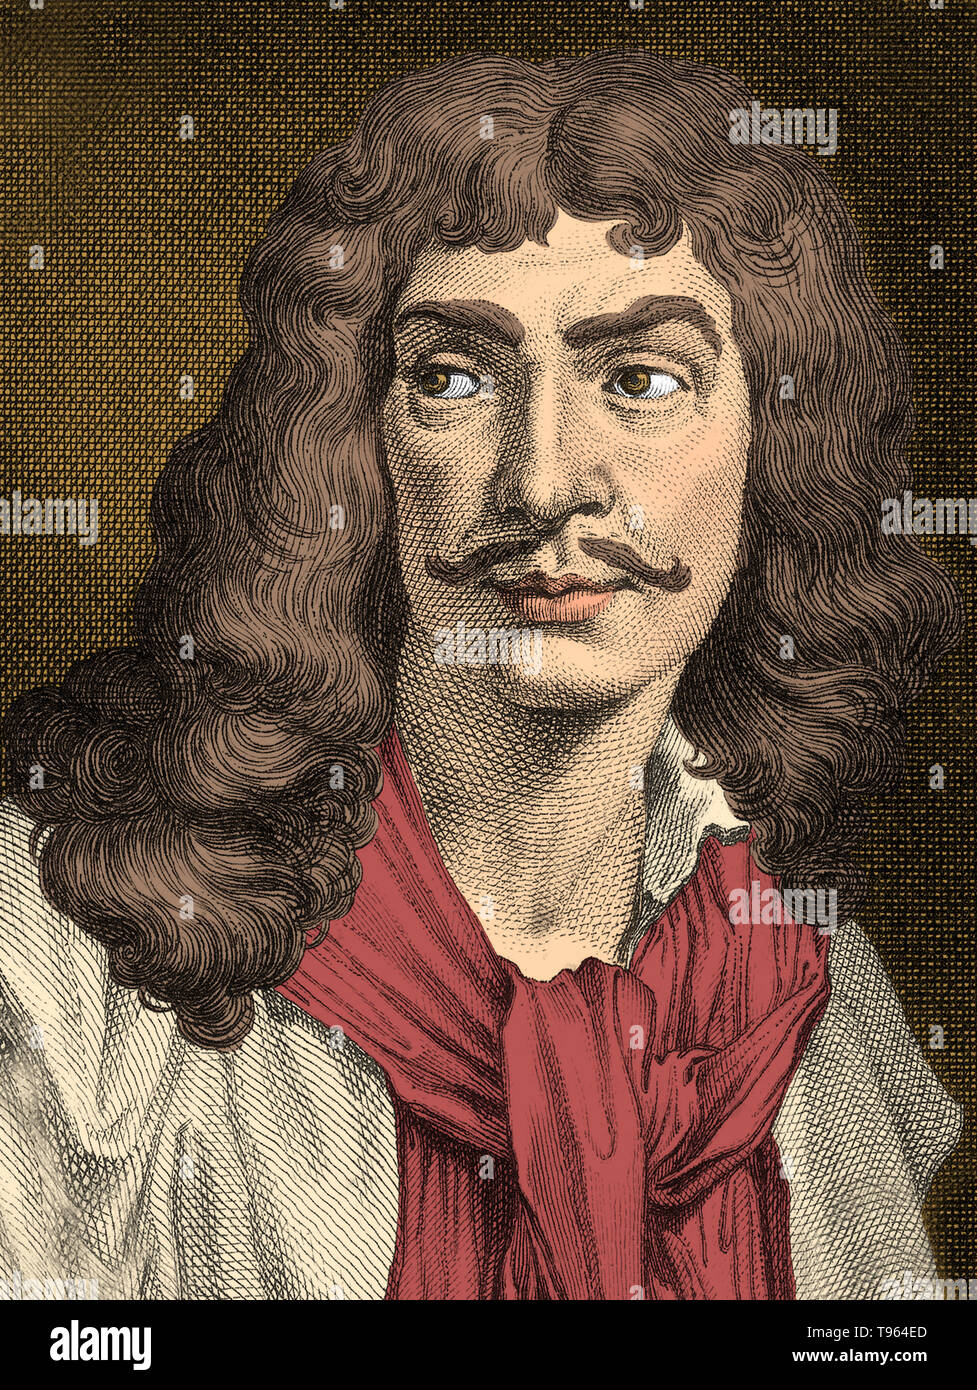 Jean-Baptiste Poquelin, connu sous le nom de Molière (janvier 15,1622 - Février 17,1673) était un acteur et dramaturge français qui est considéré comme l'un des plus grands maîtres de la comédie dans la littérature occidentale. Né dans une famille prospère et ayant étudié au Collège de Clermont (aujourd'hui lycée Louis-le-Grand), il était bien adapté pour commencer une vie dans le théâtre. Banque D'Images